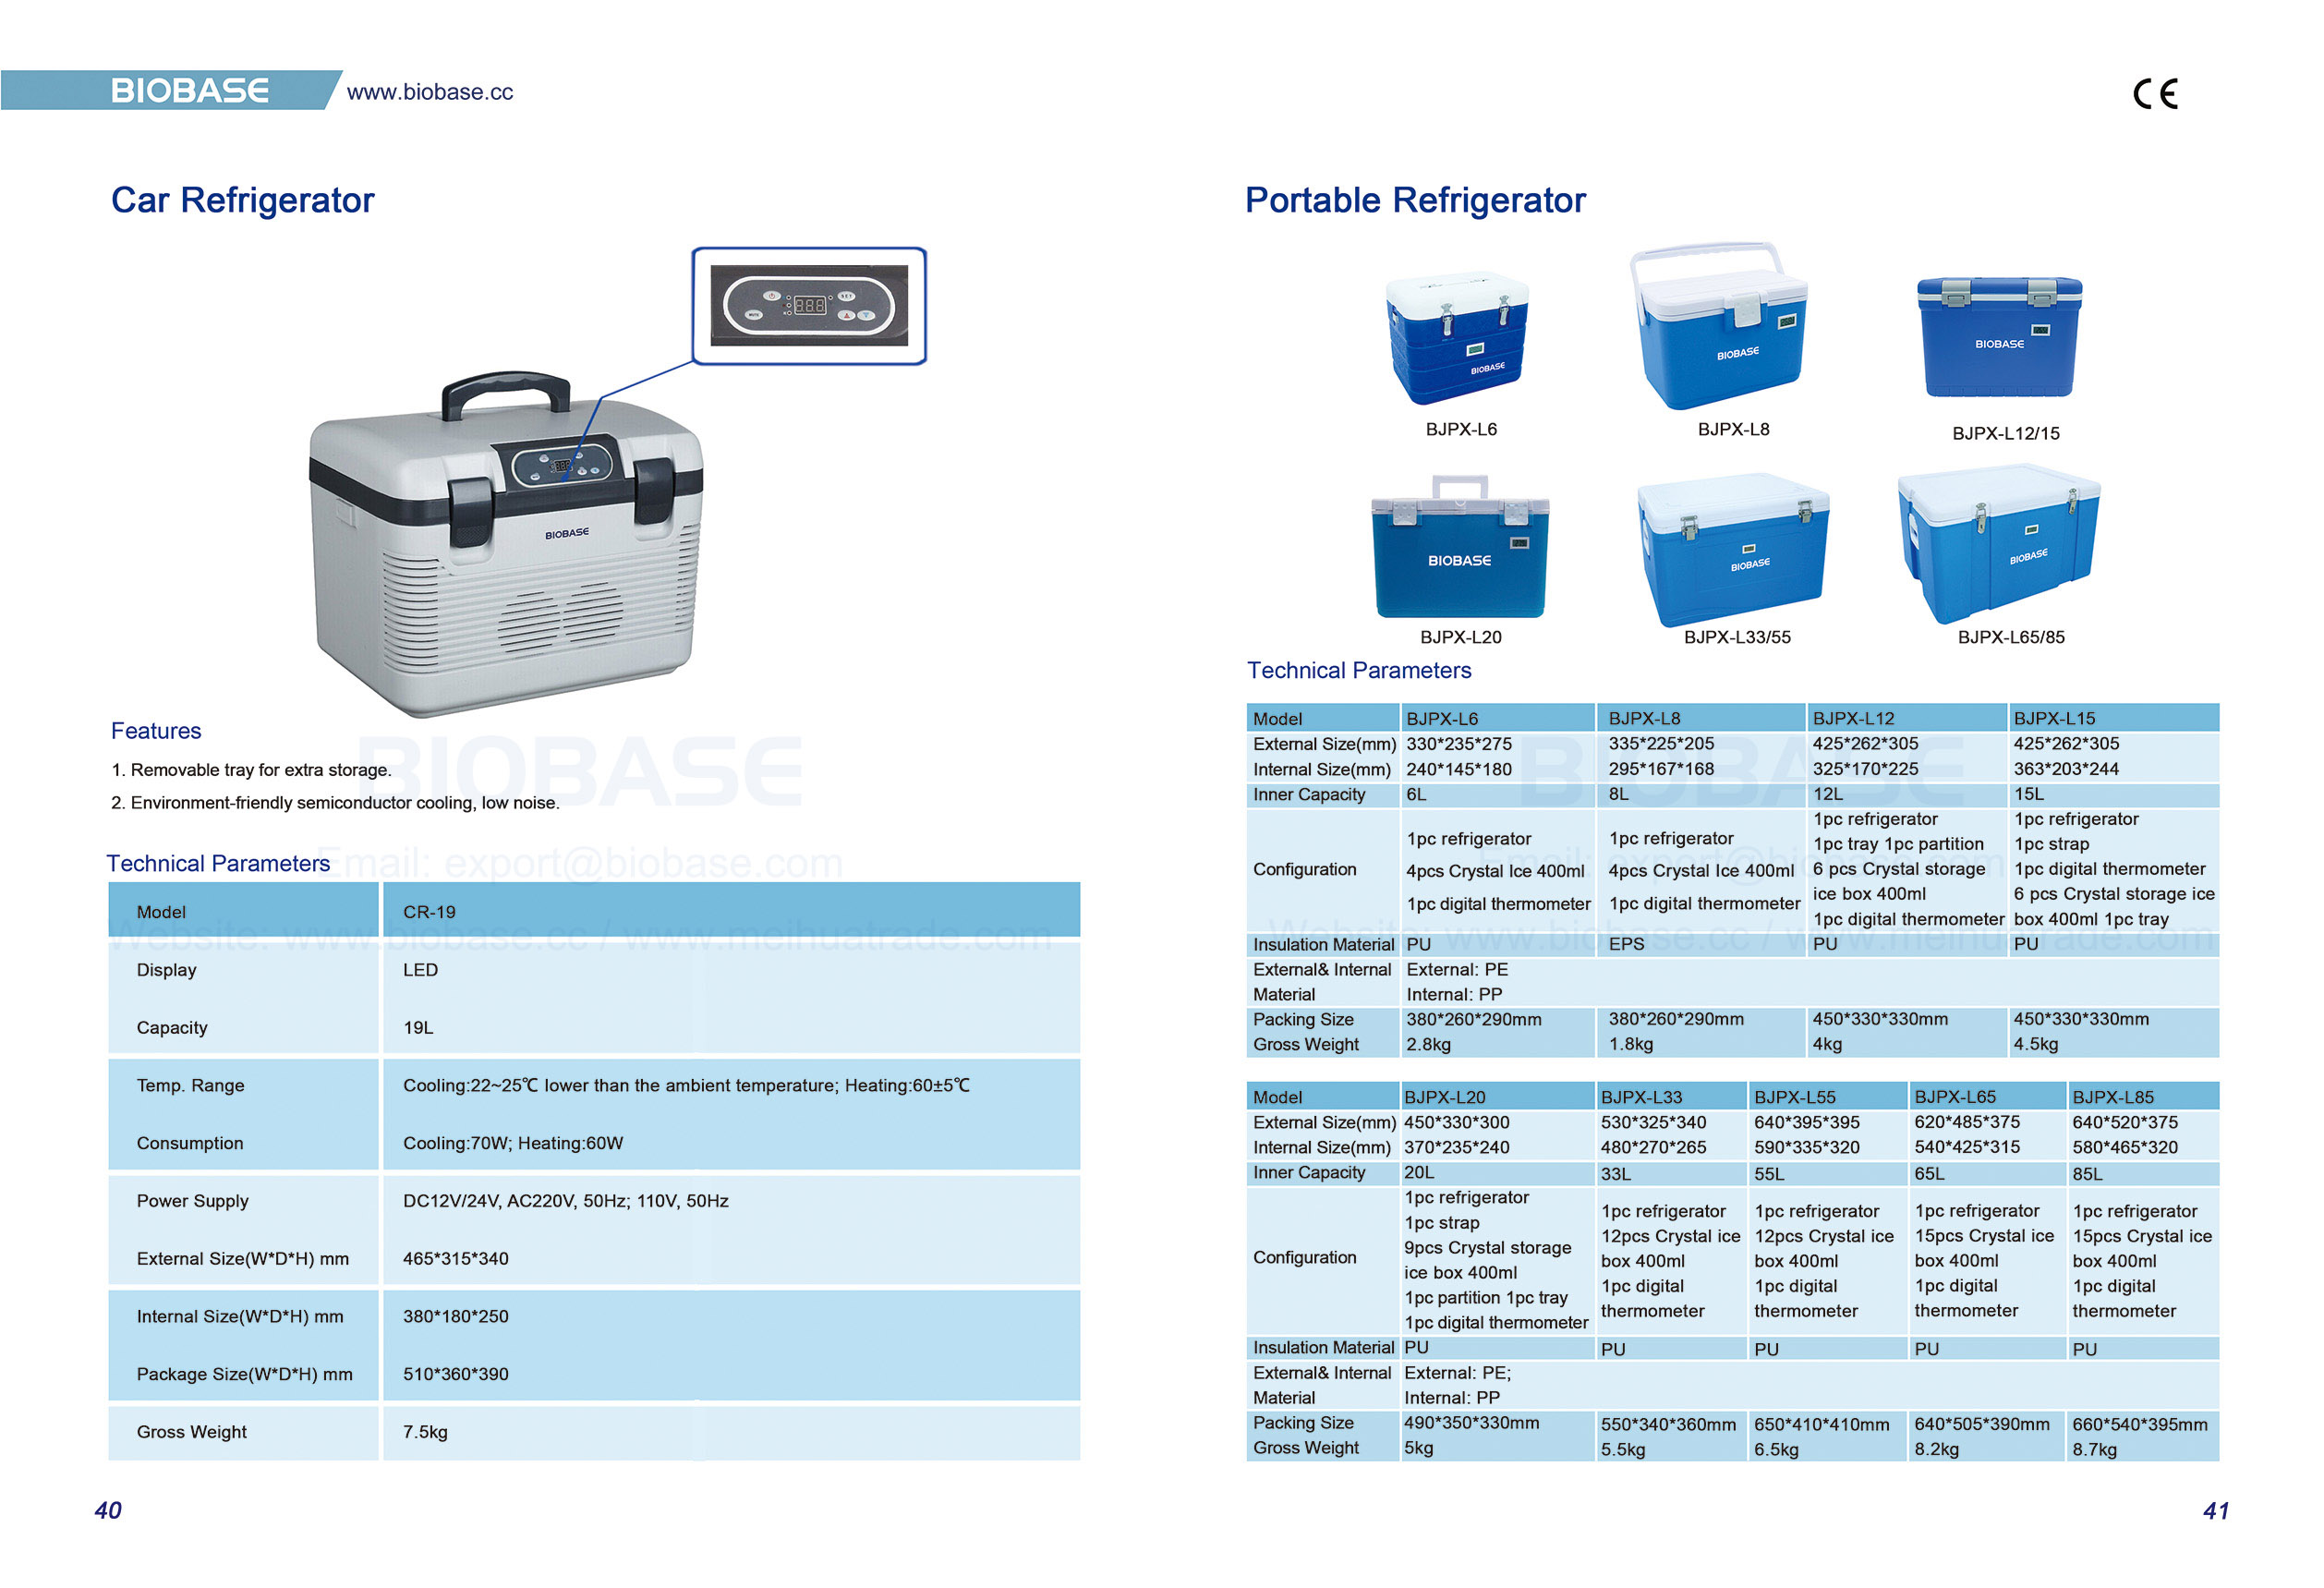 40-41 Car Refrigerator & Portable Refrigerator